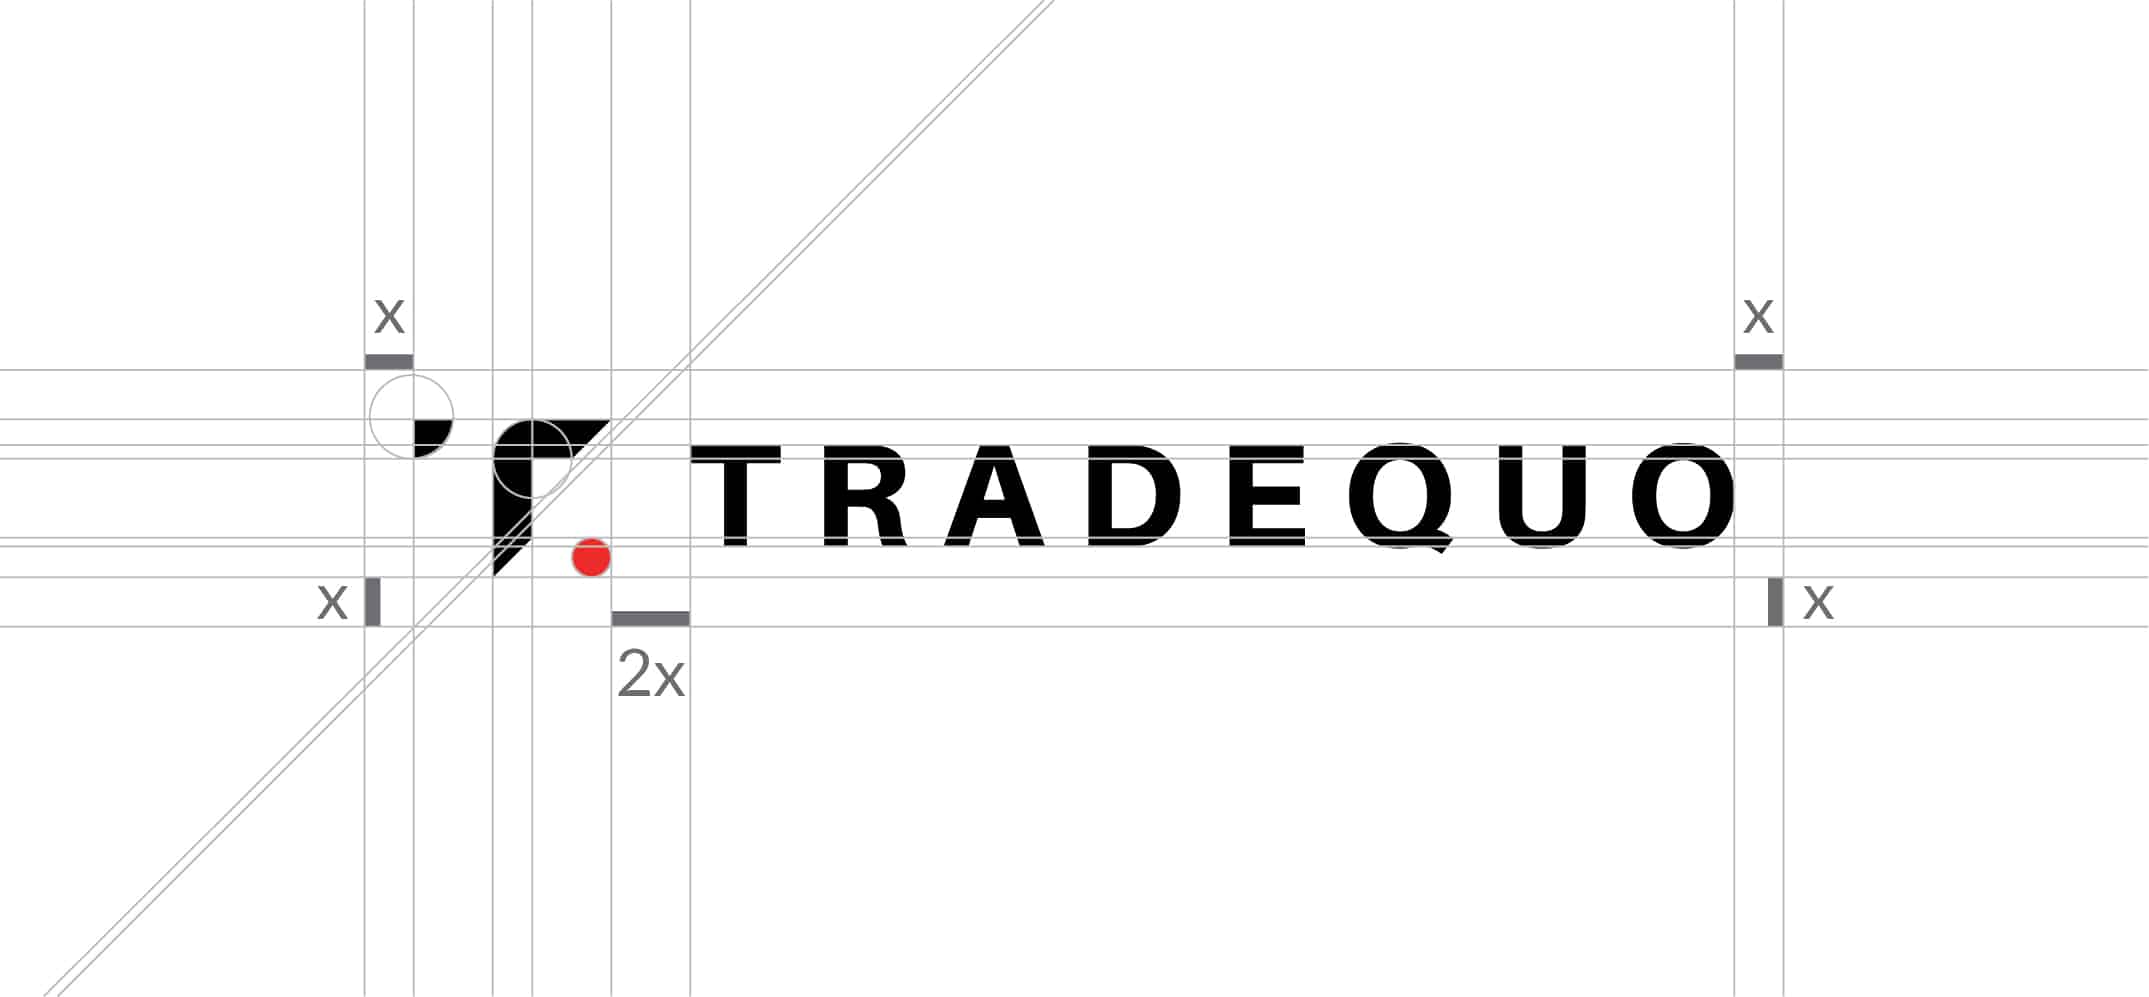 TradeQuo logo measurement